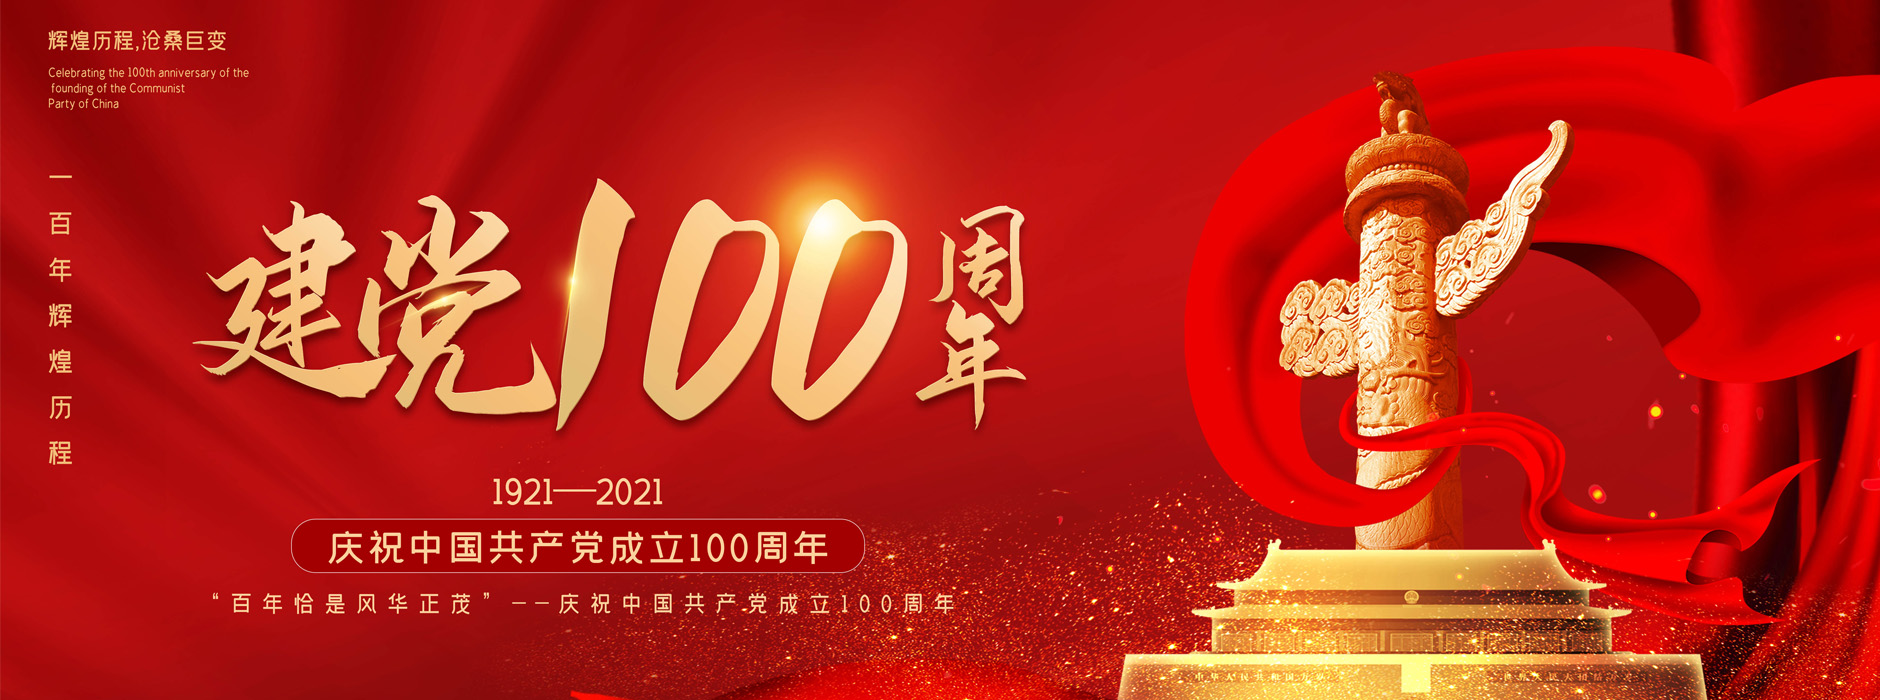 熱烈慶祝中國共產黨成立100周年